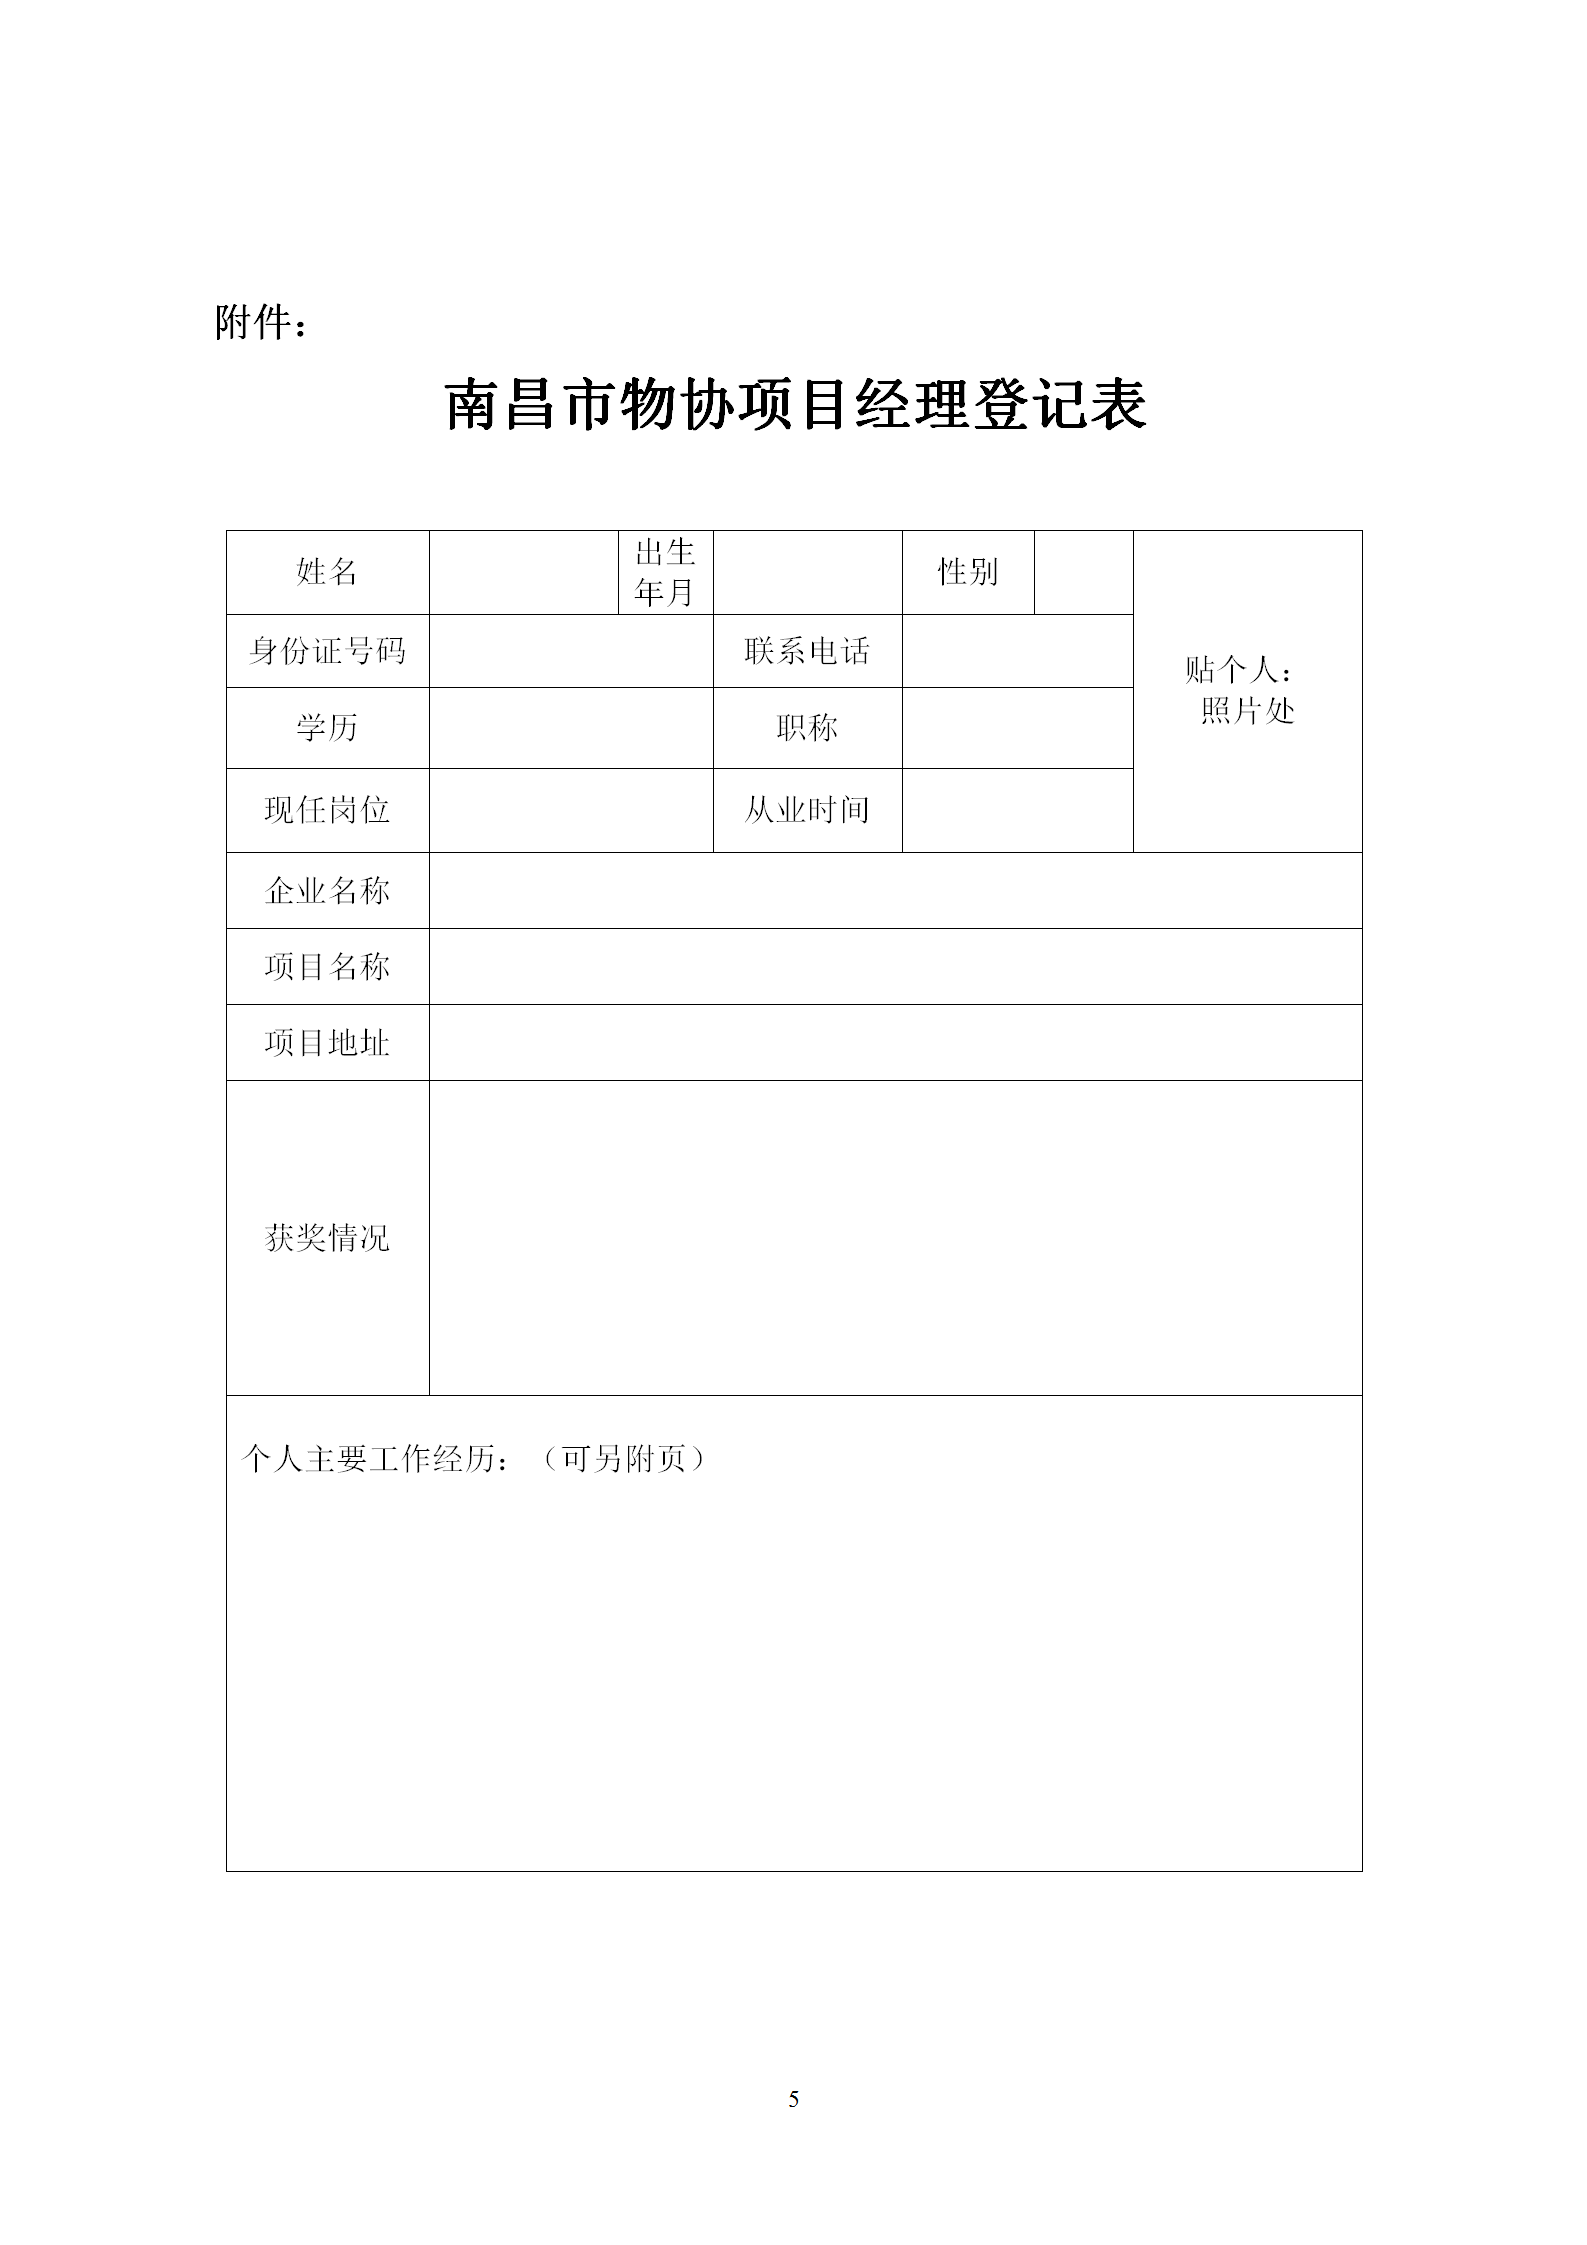 洪物协字[2020]10号 关于举办南昌市物业服务项目经理学习班的通知_05.png